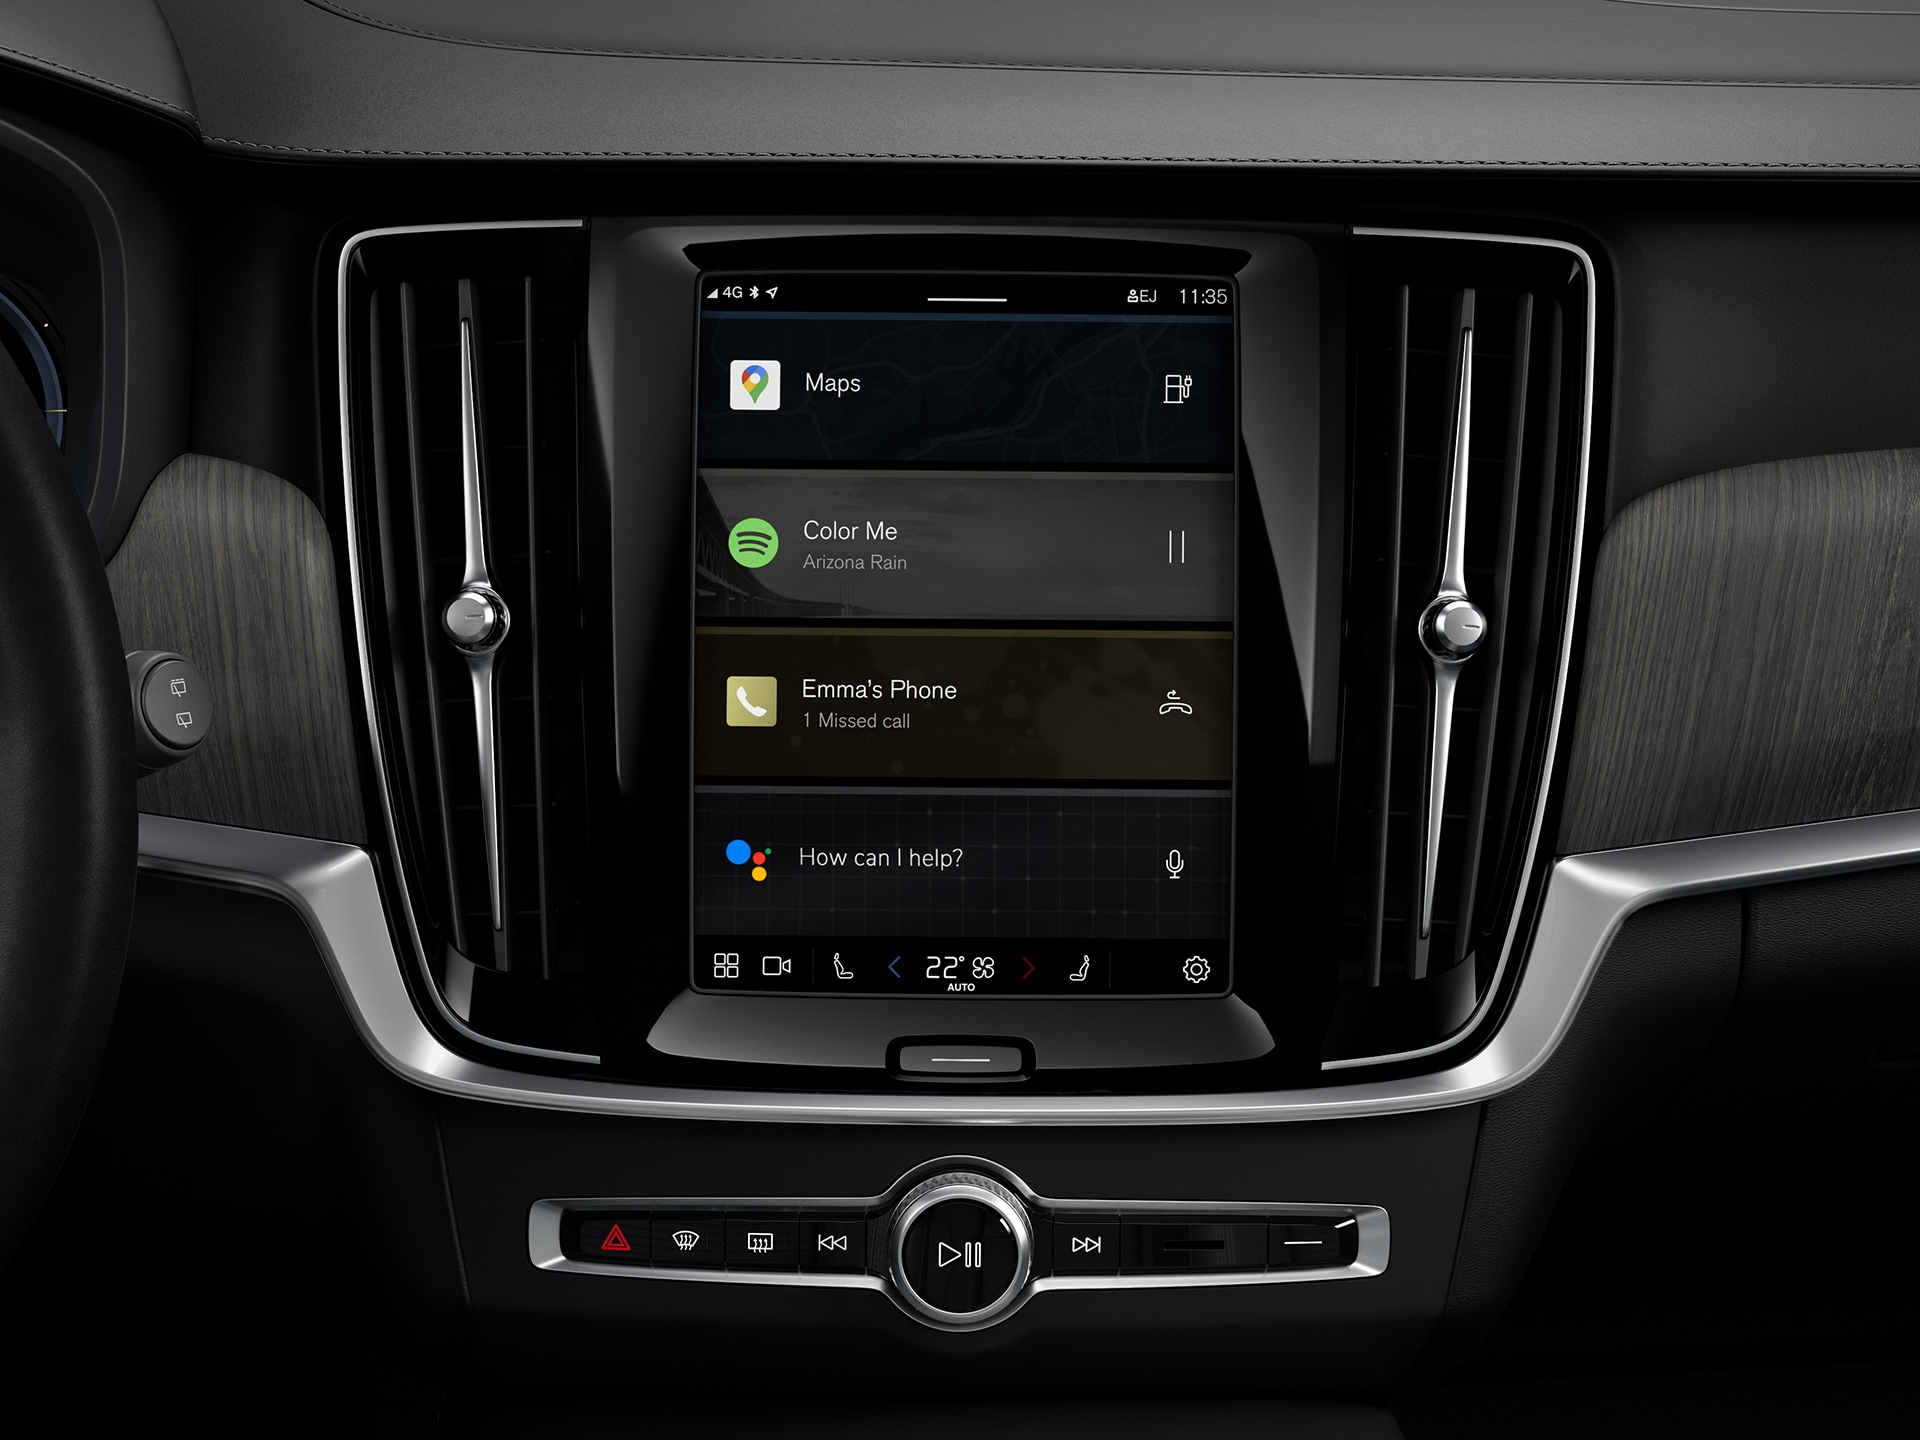 Konsola qendrore në një makinë Volvo me portobagazh që shfaq sistemin e informacioneve dhe argëtimit të Google.